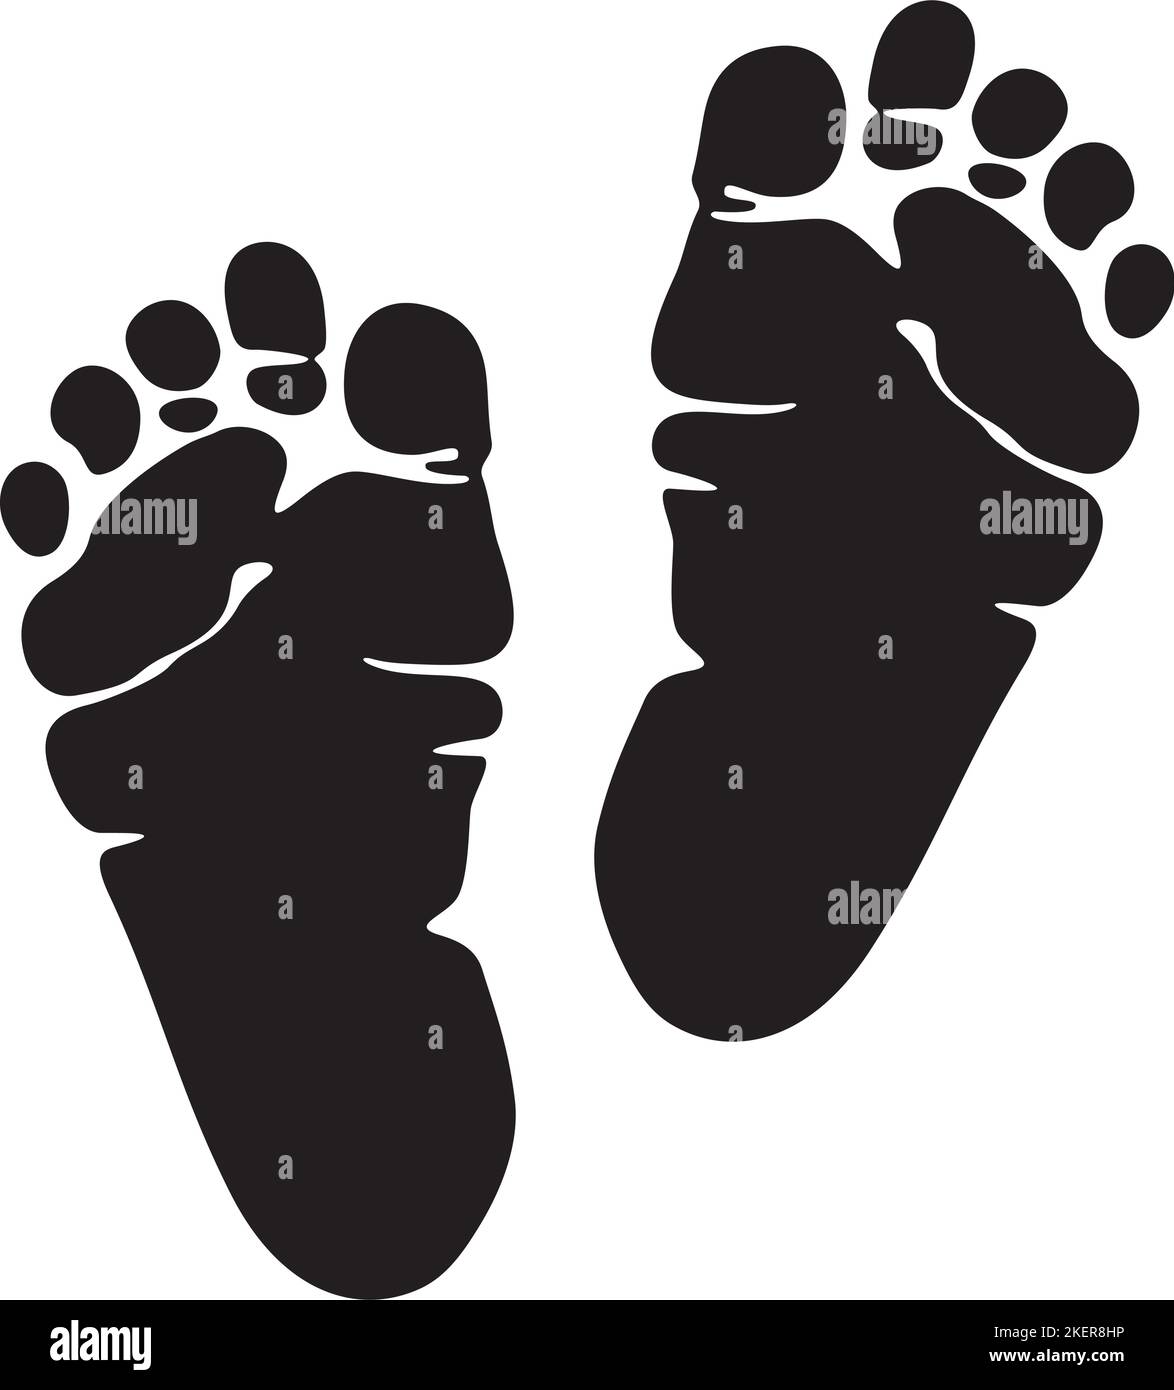 Baby Footprint Schwarz-Weiß-Vektorgrafik. Schritte. Stock Vektor